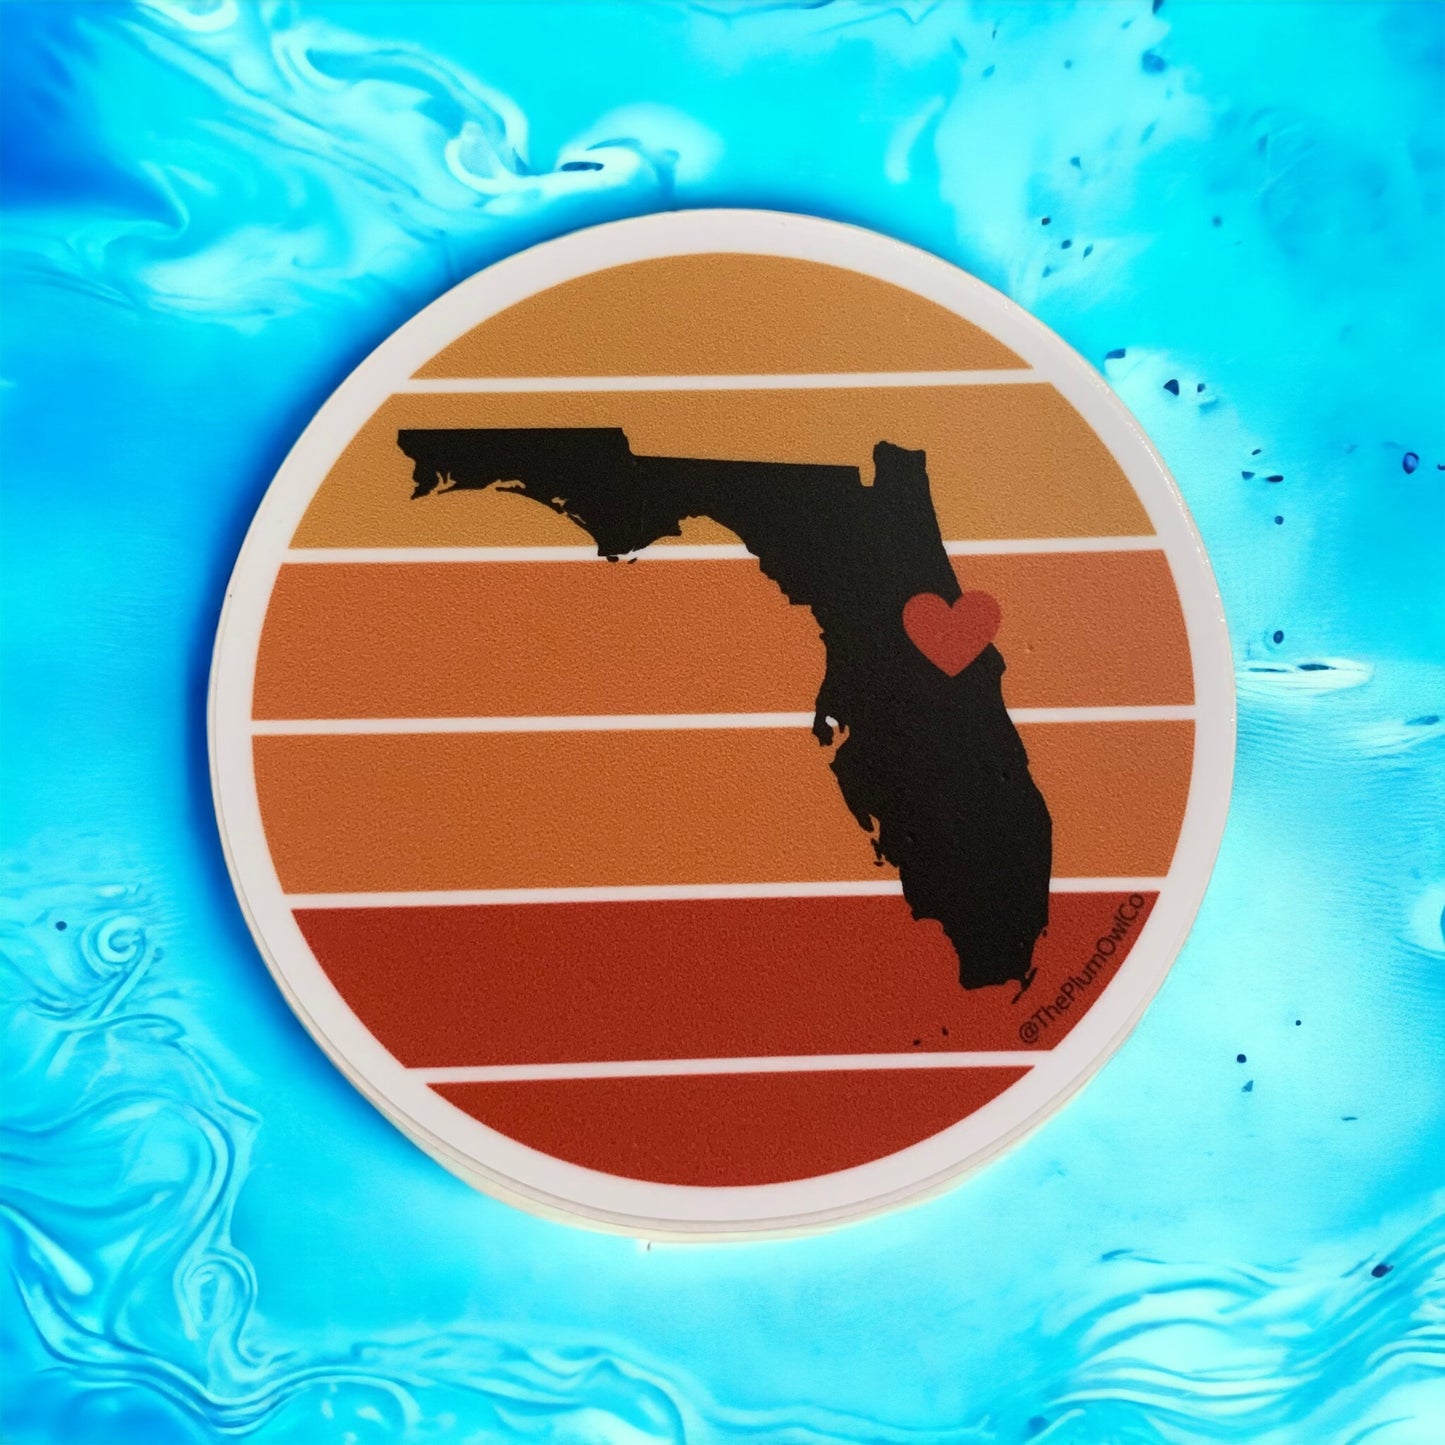 Florida Sticker